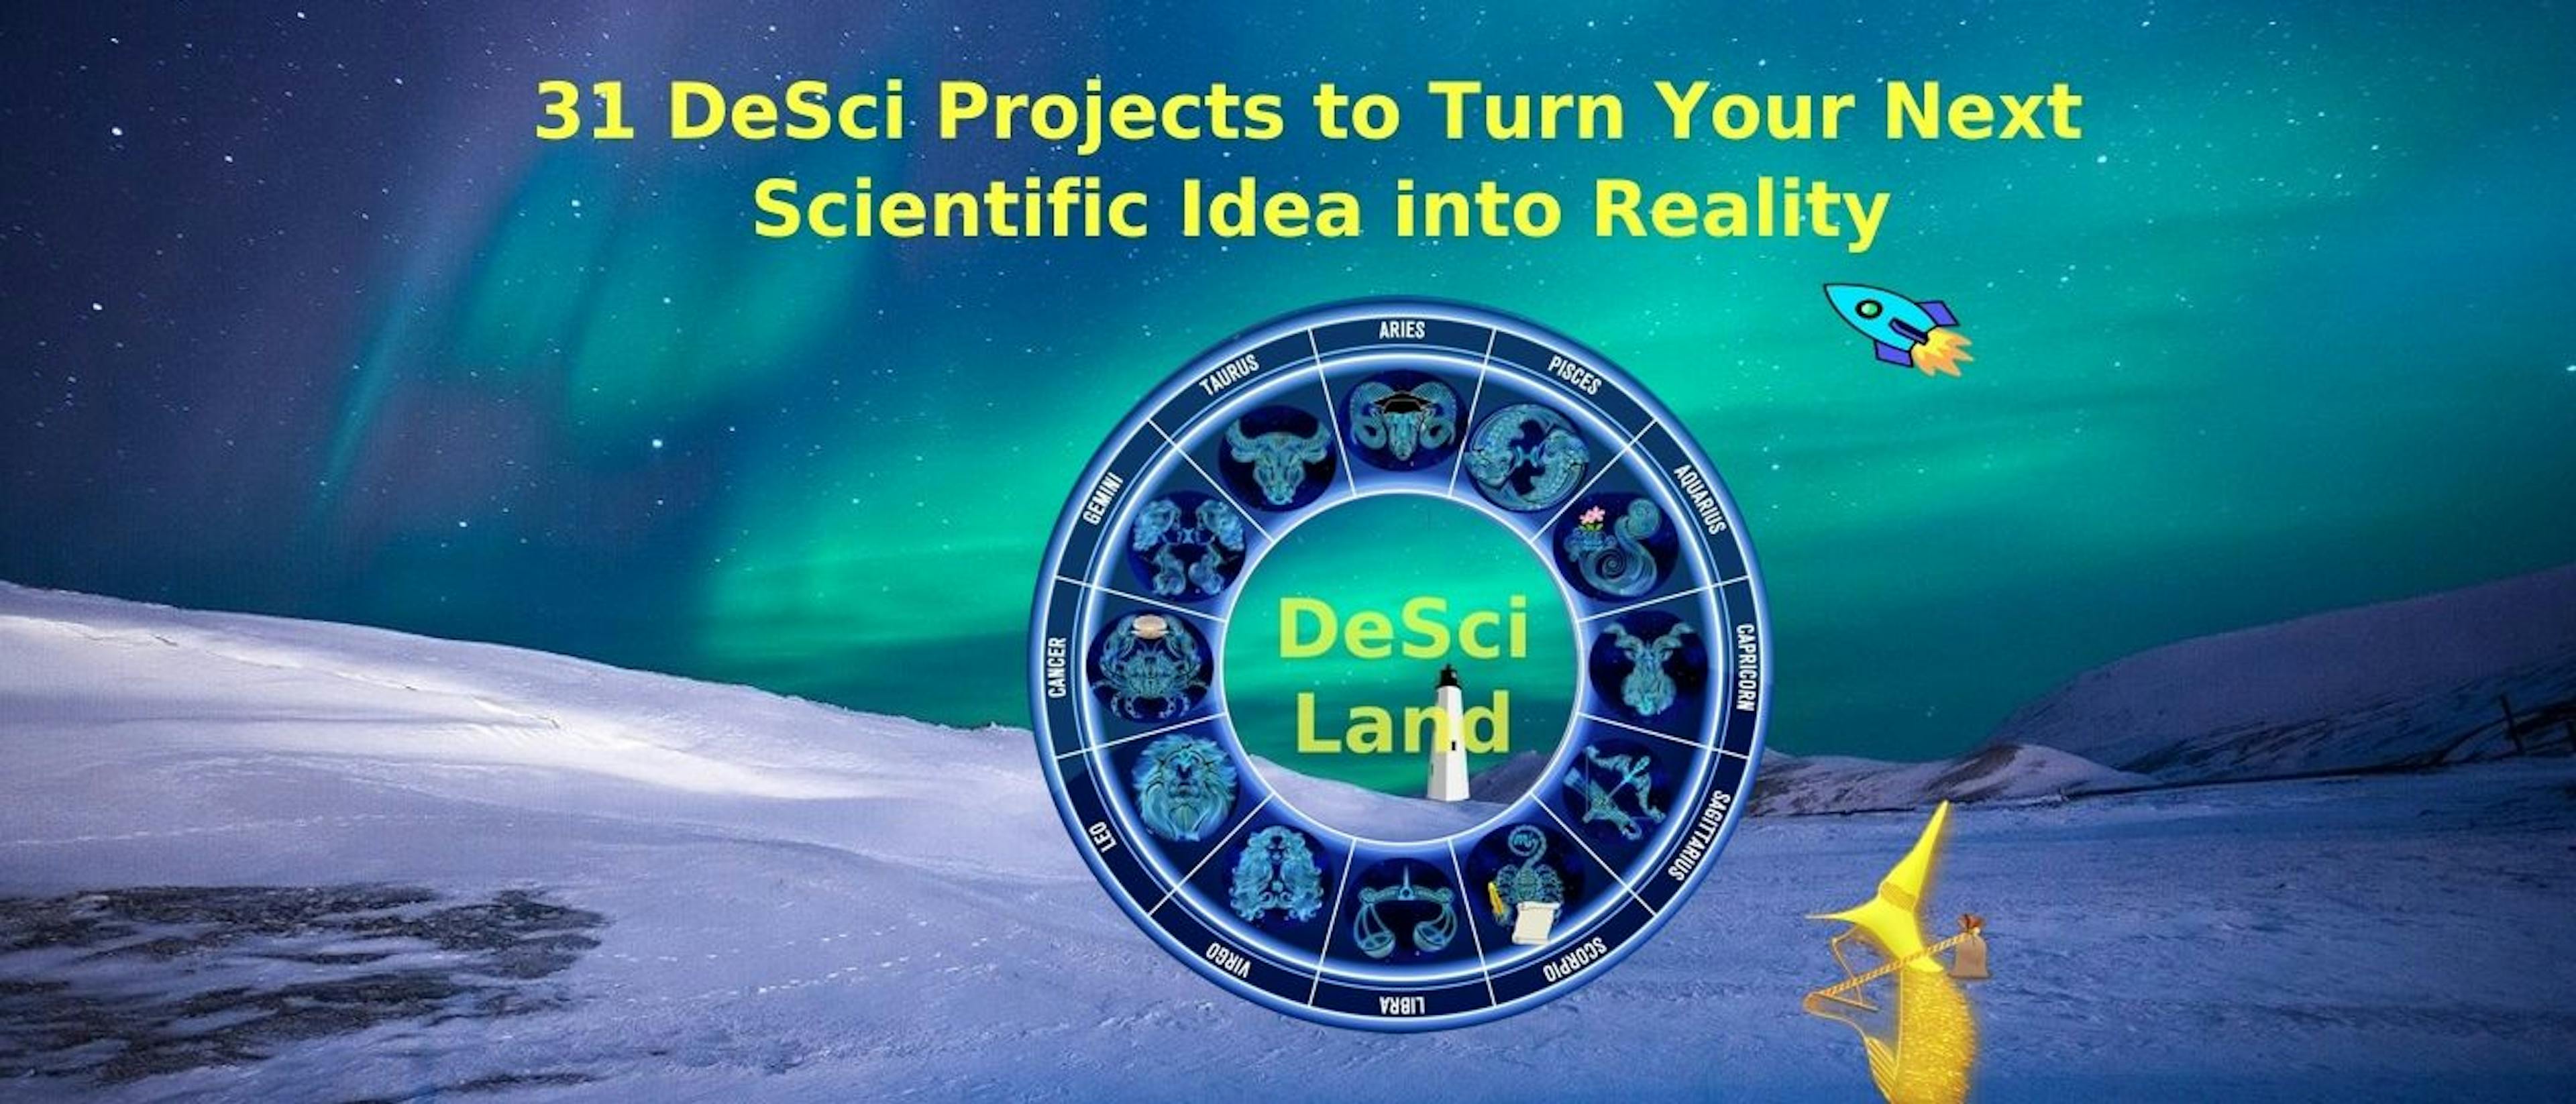 featured image - 31 projets DeSci pour transformer votre prochaine idée scientifique en réalité